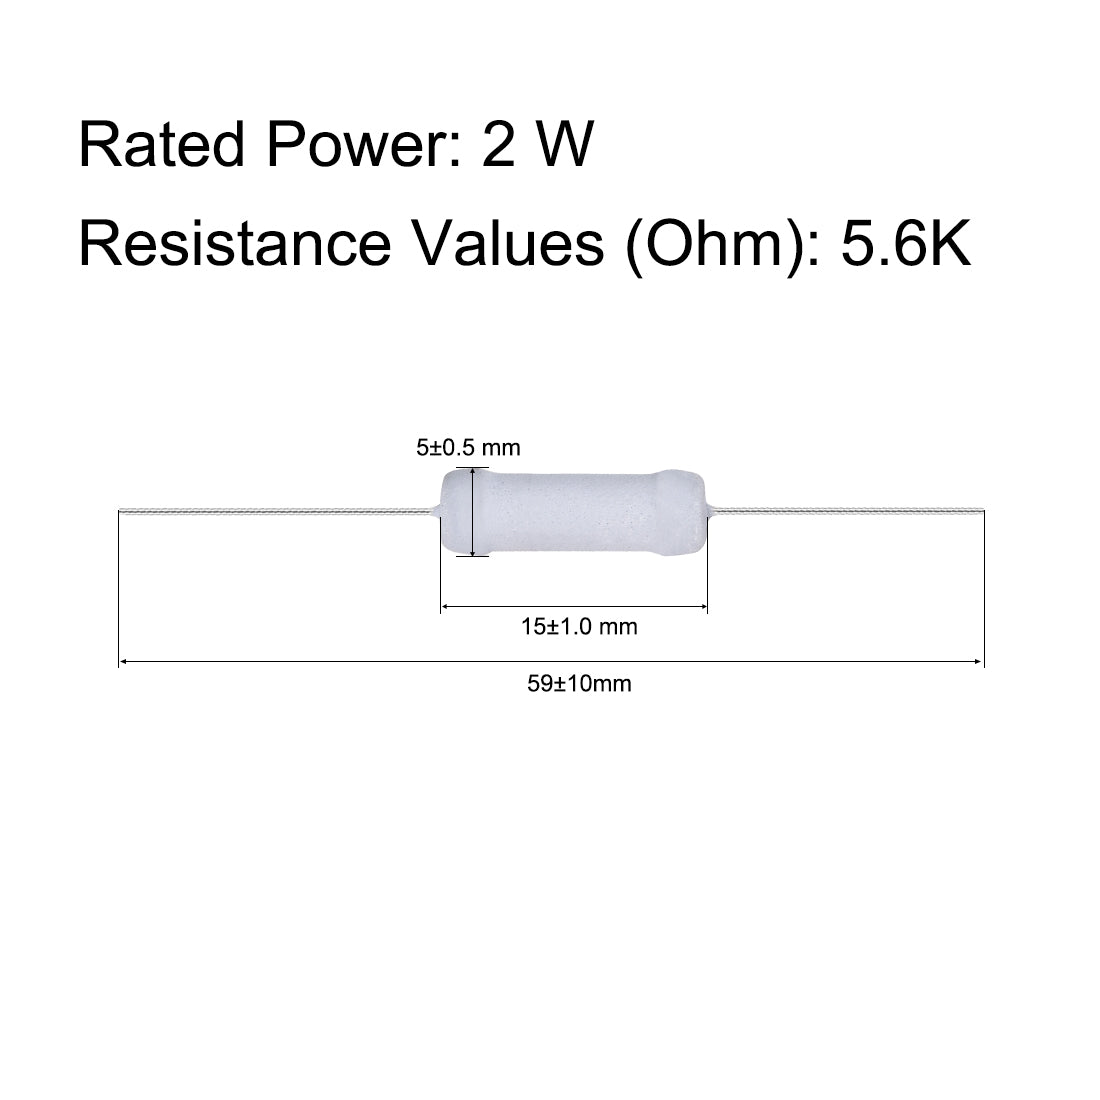 uxcell Uxcell 30pcs 2W 2 Watt Metal Oxide Film Resistor Axile Lead 5.6K Ohm ±5% Tolerance